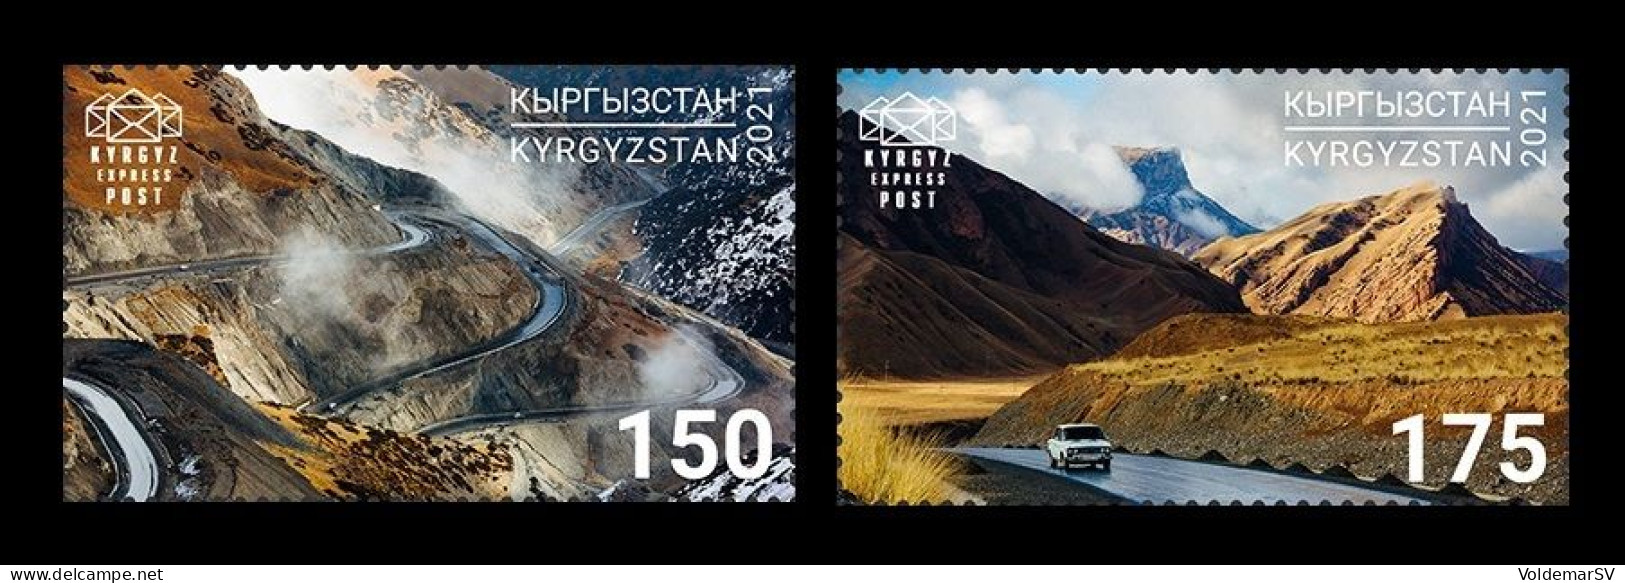 Kyrgyzstan (KEP) 2021 Mih. 181/82 Pamir Highway. Automobiles. Mountains MNH ** - Kyrgyzstan